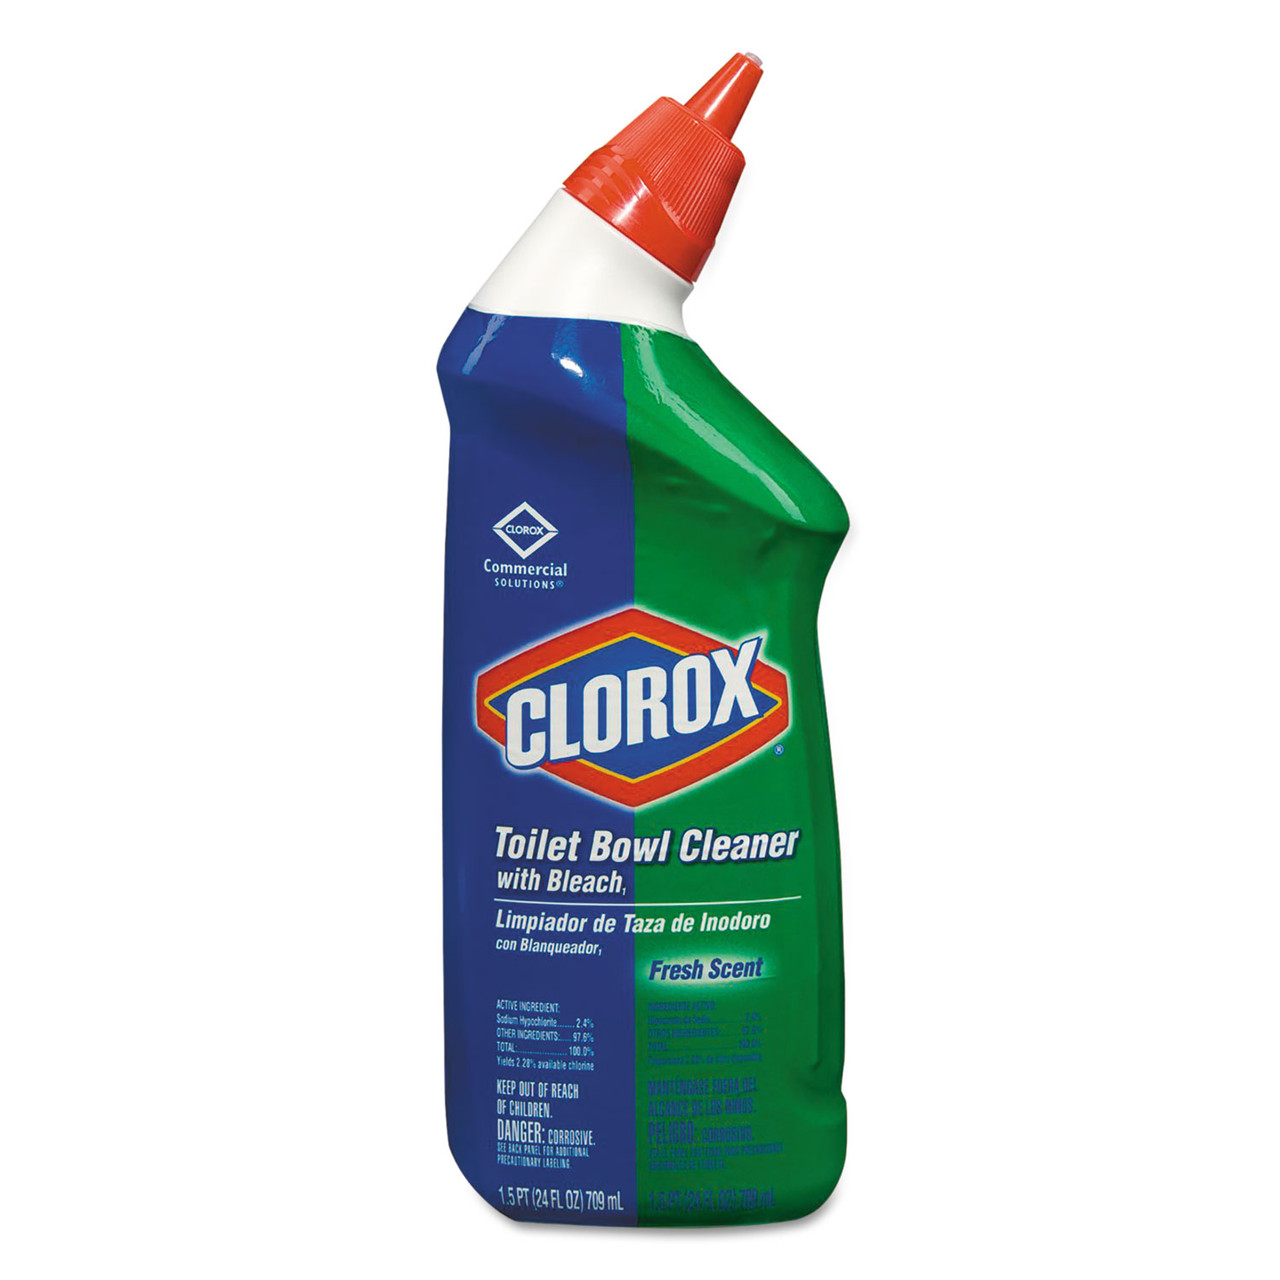 Clorox Clean-Up Cleaner + Bleach, 32 Oz Bottle, 9/Carton - CLO31221